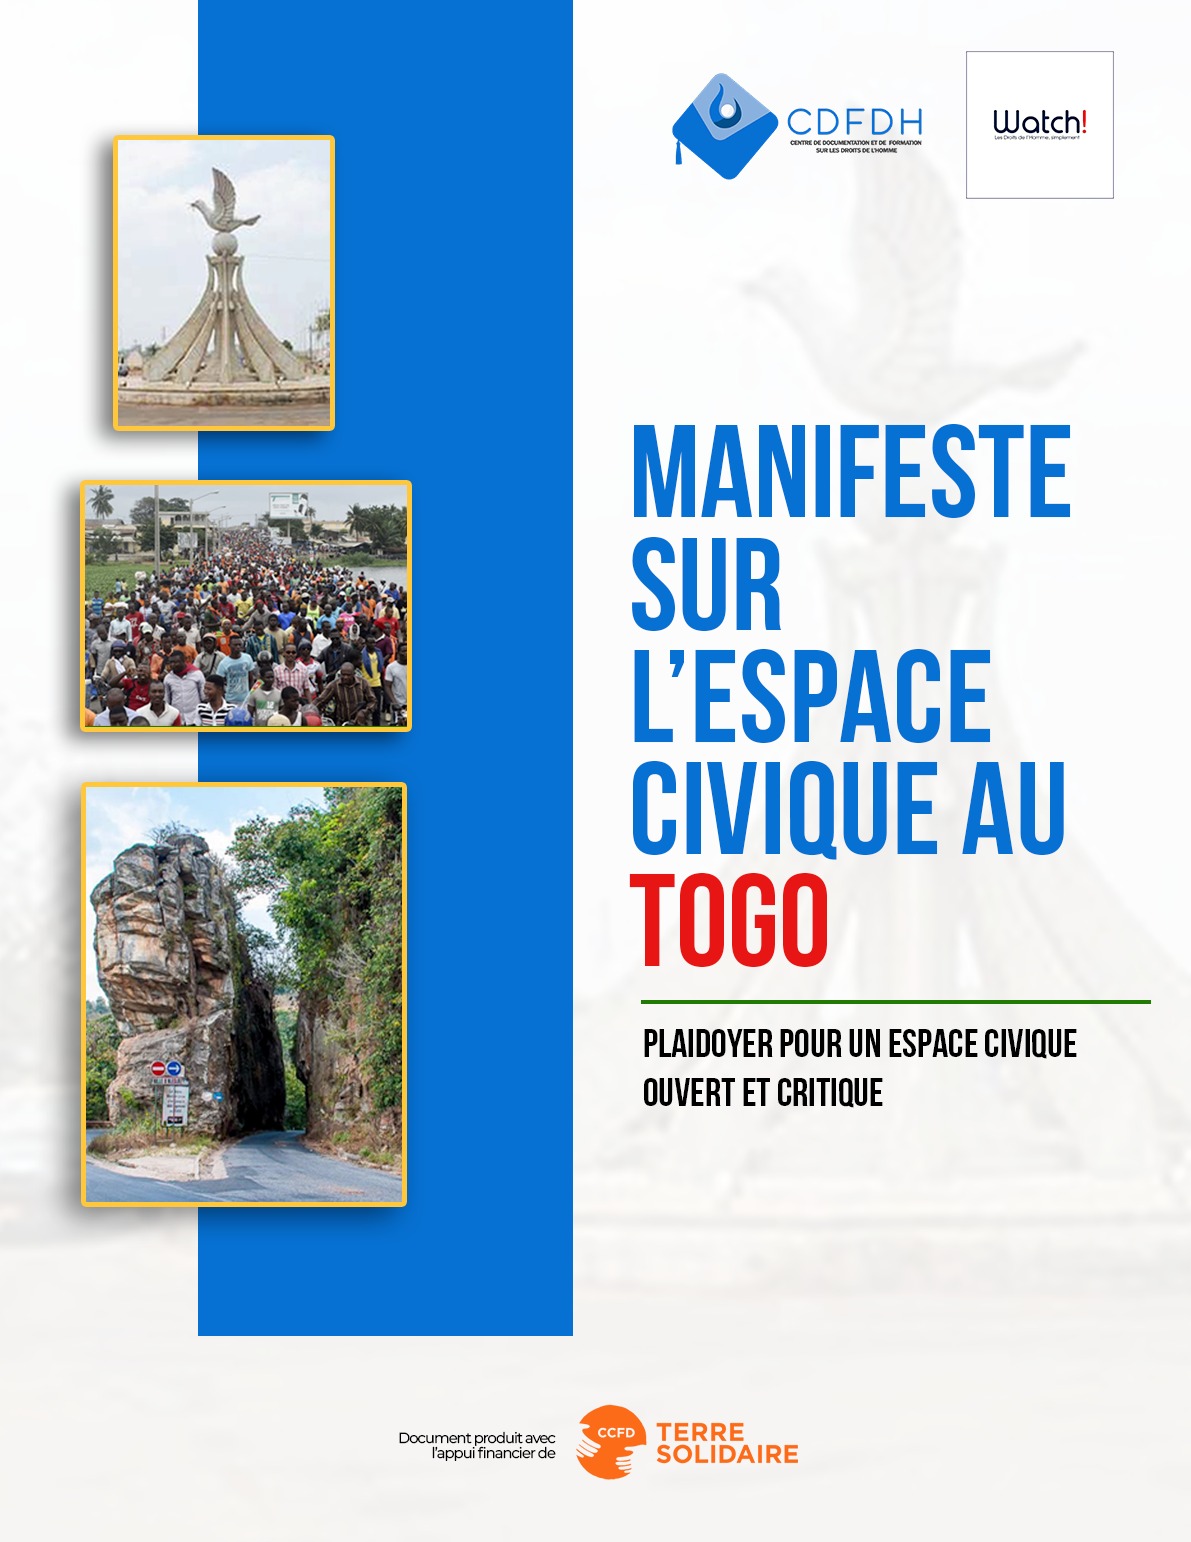 CDFDH : Les jeunes réclament un espace civique plus ouvert au Togo !